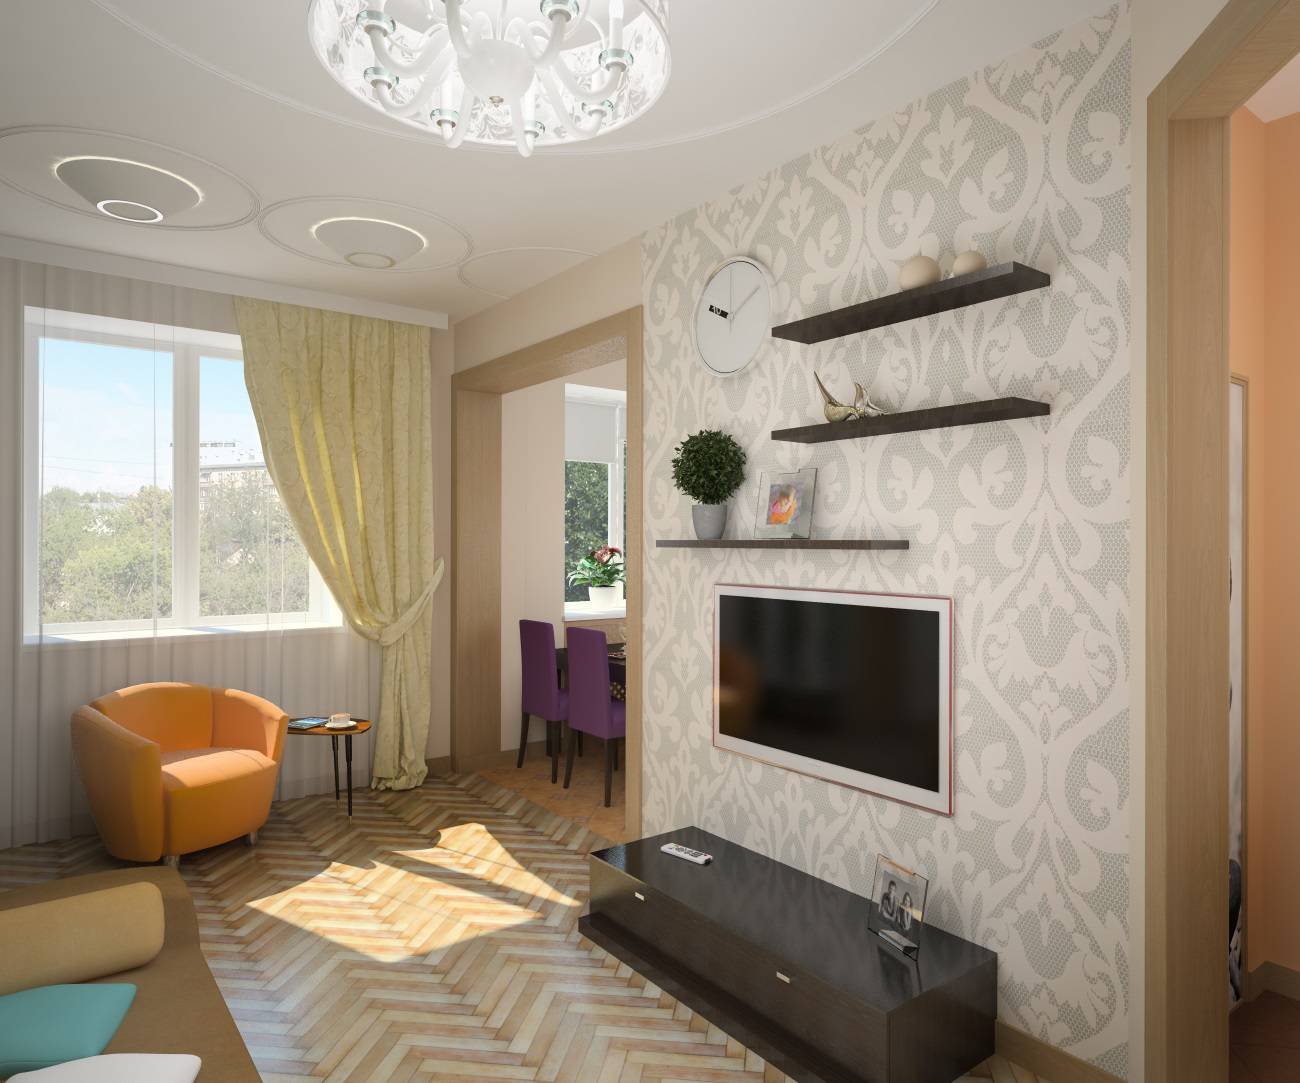 Дизайн проходной гостиной - интерьер и планировка комнаты